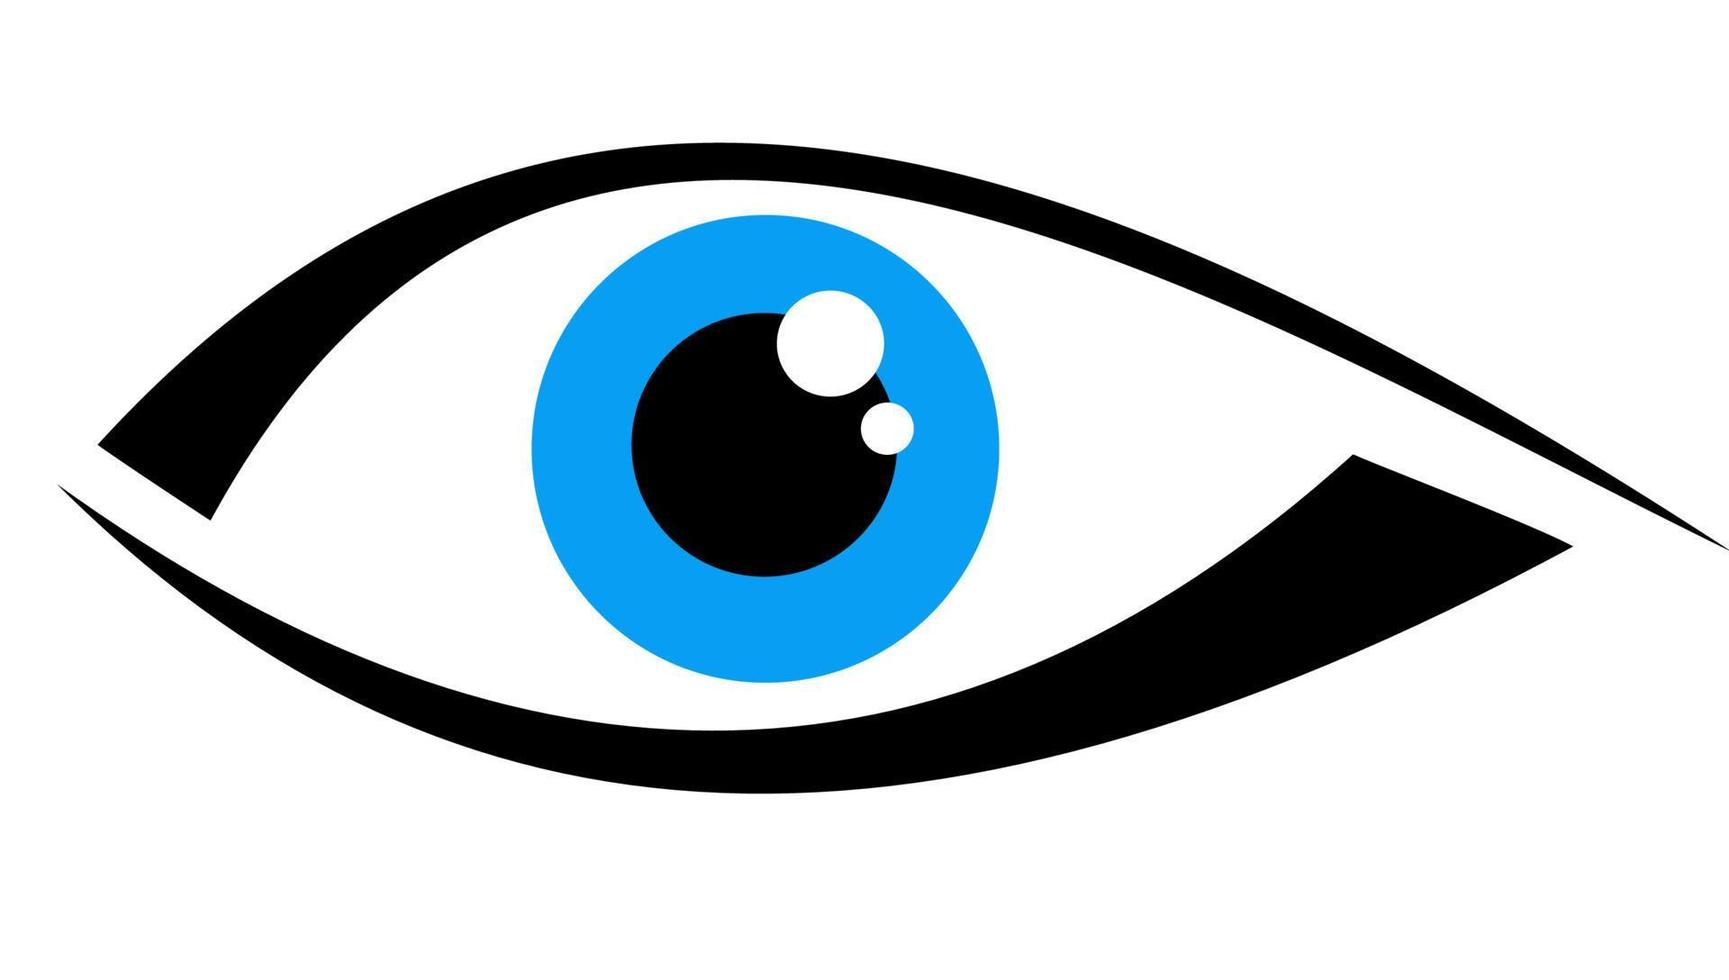 logo avec un oeil bleu vecteur